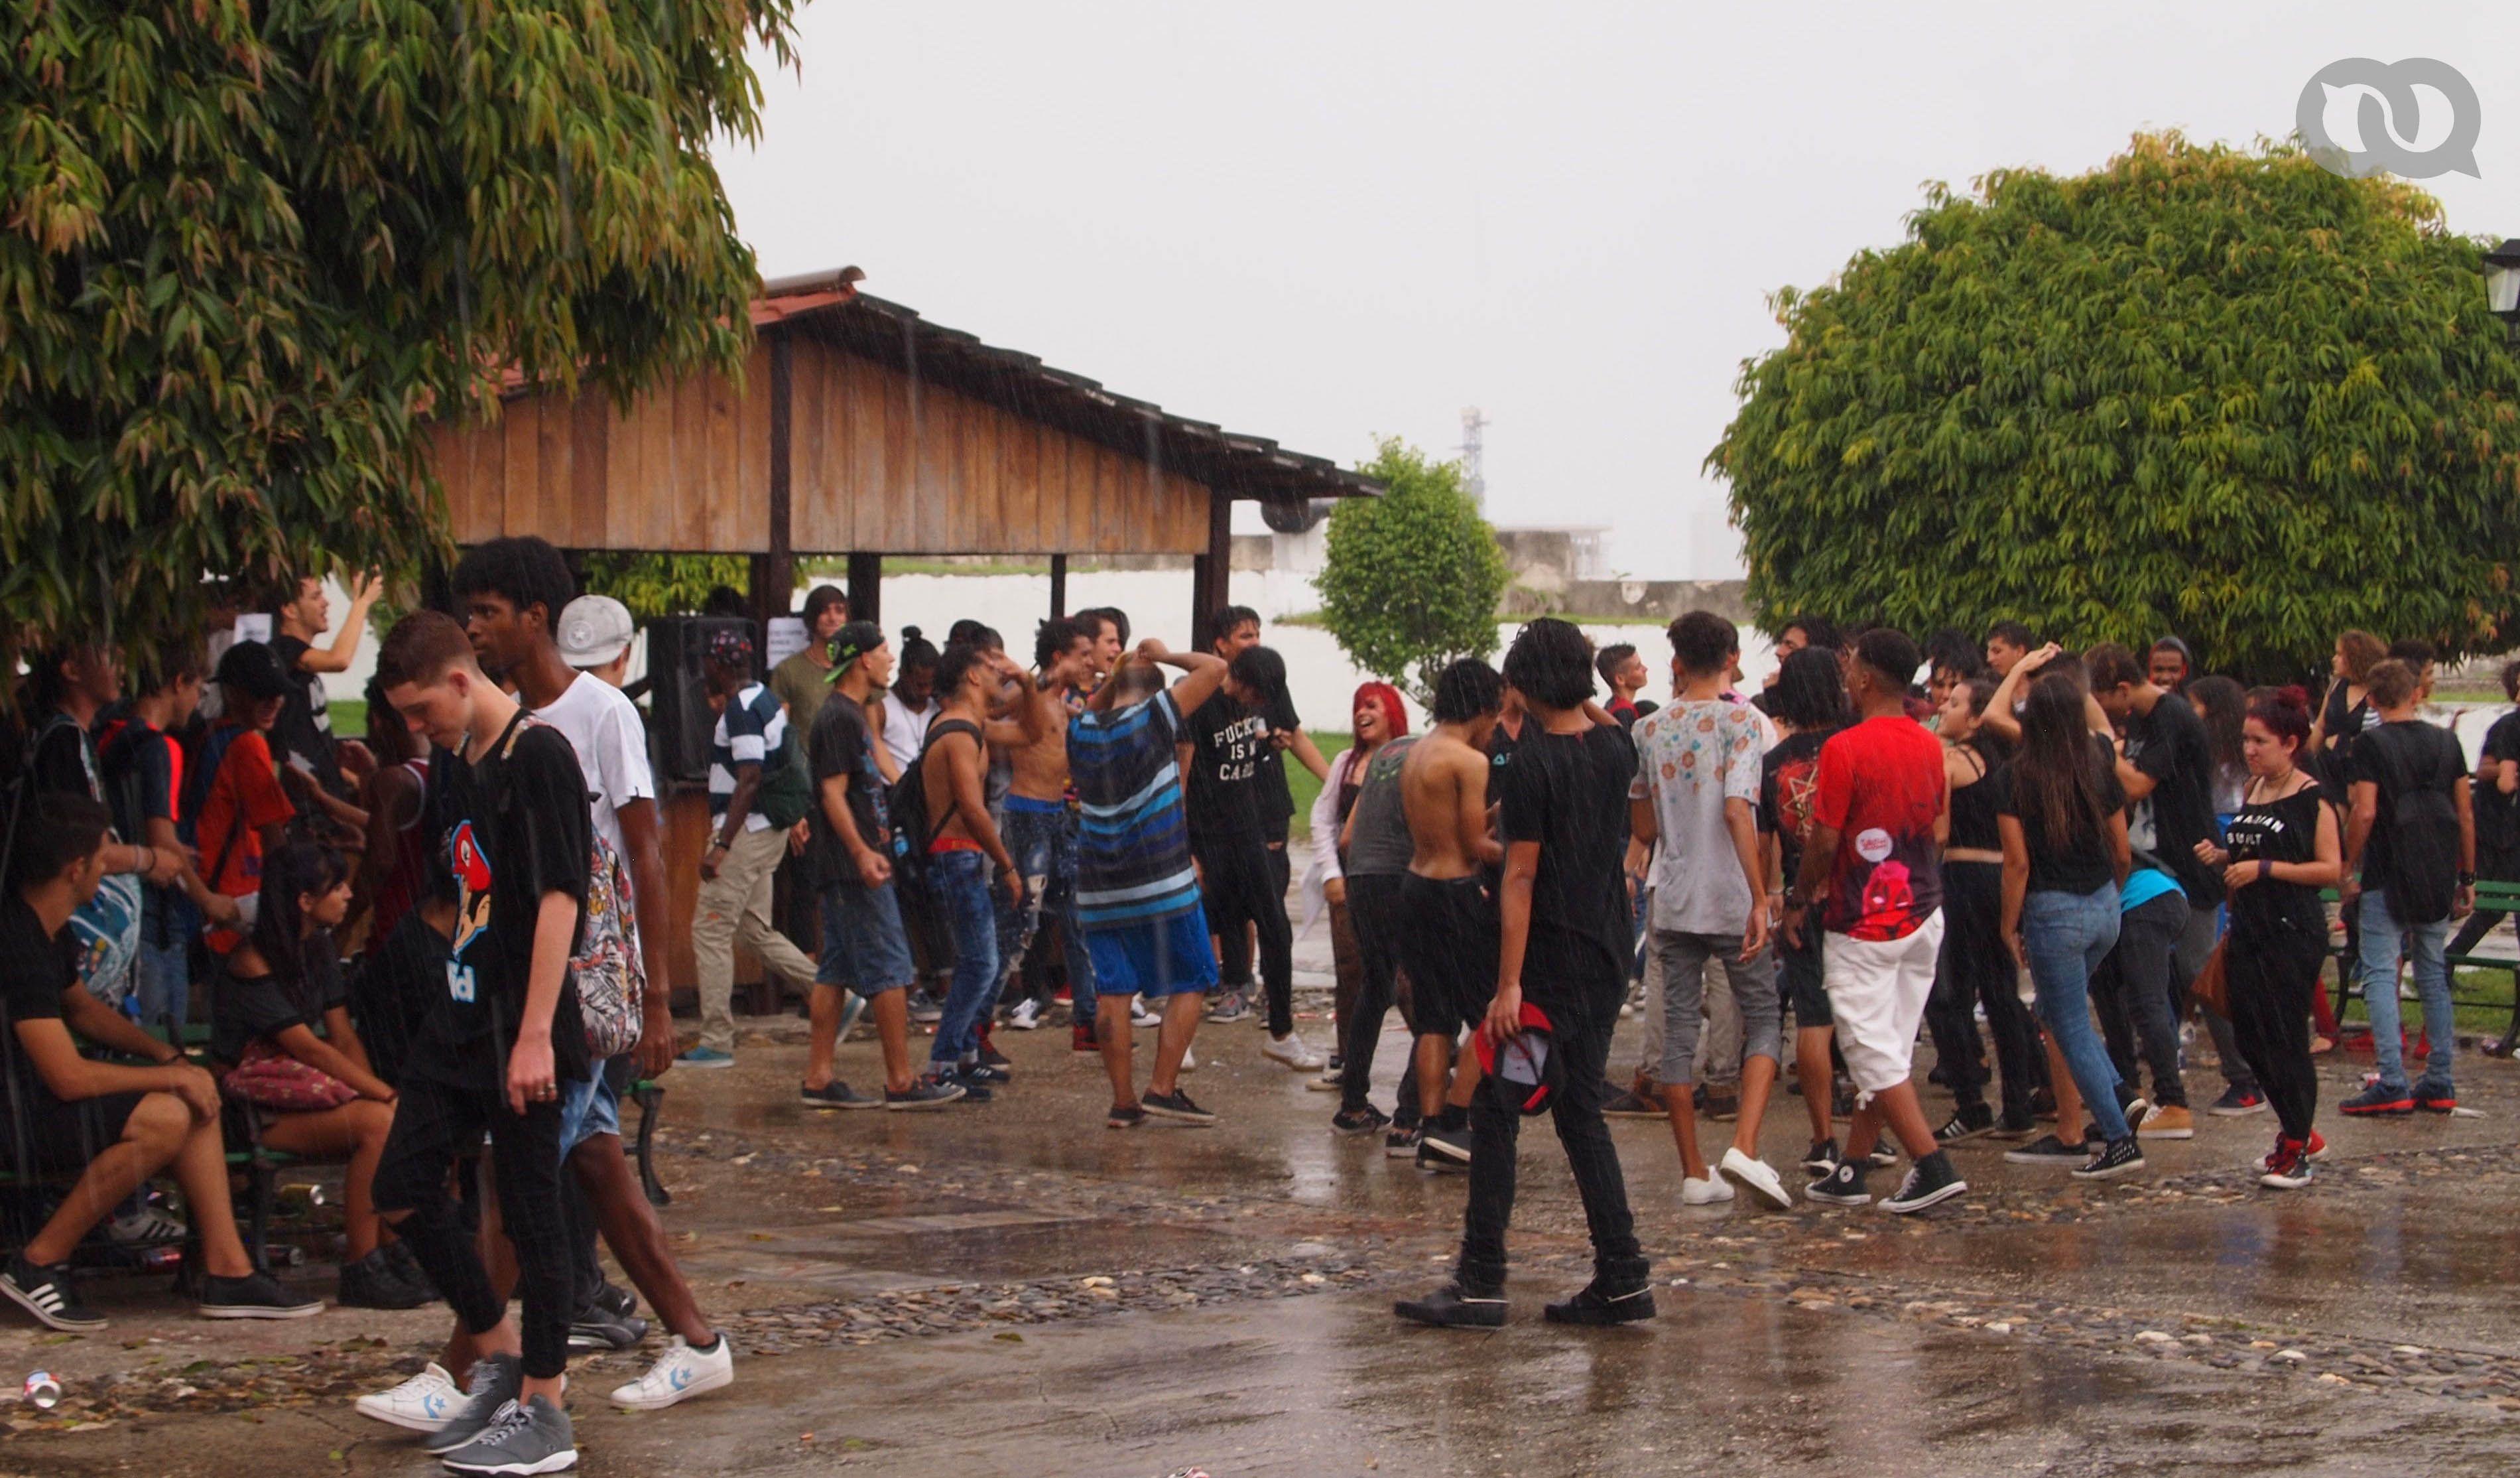 Incluso bajo la lluvia, jamás detuvieron sus bailes los asistentes al festival. Fotos: Yudith Vargas Riverón.